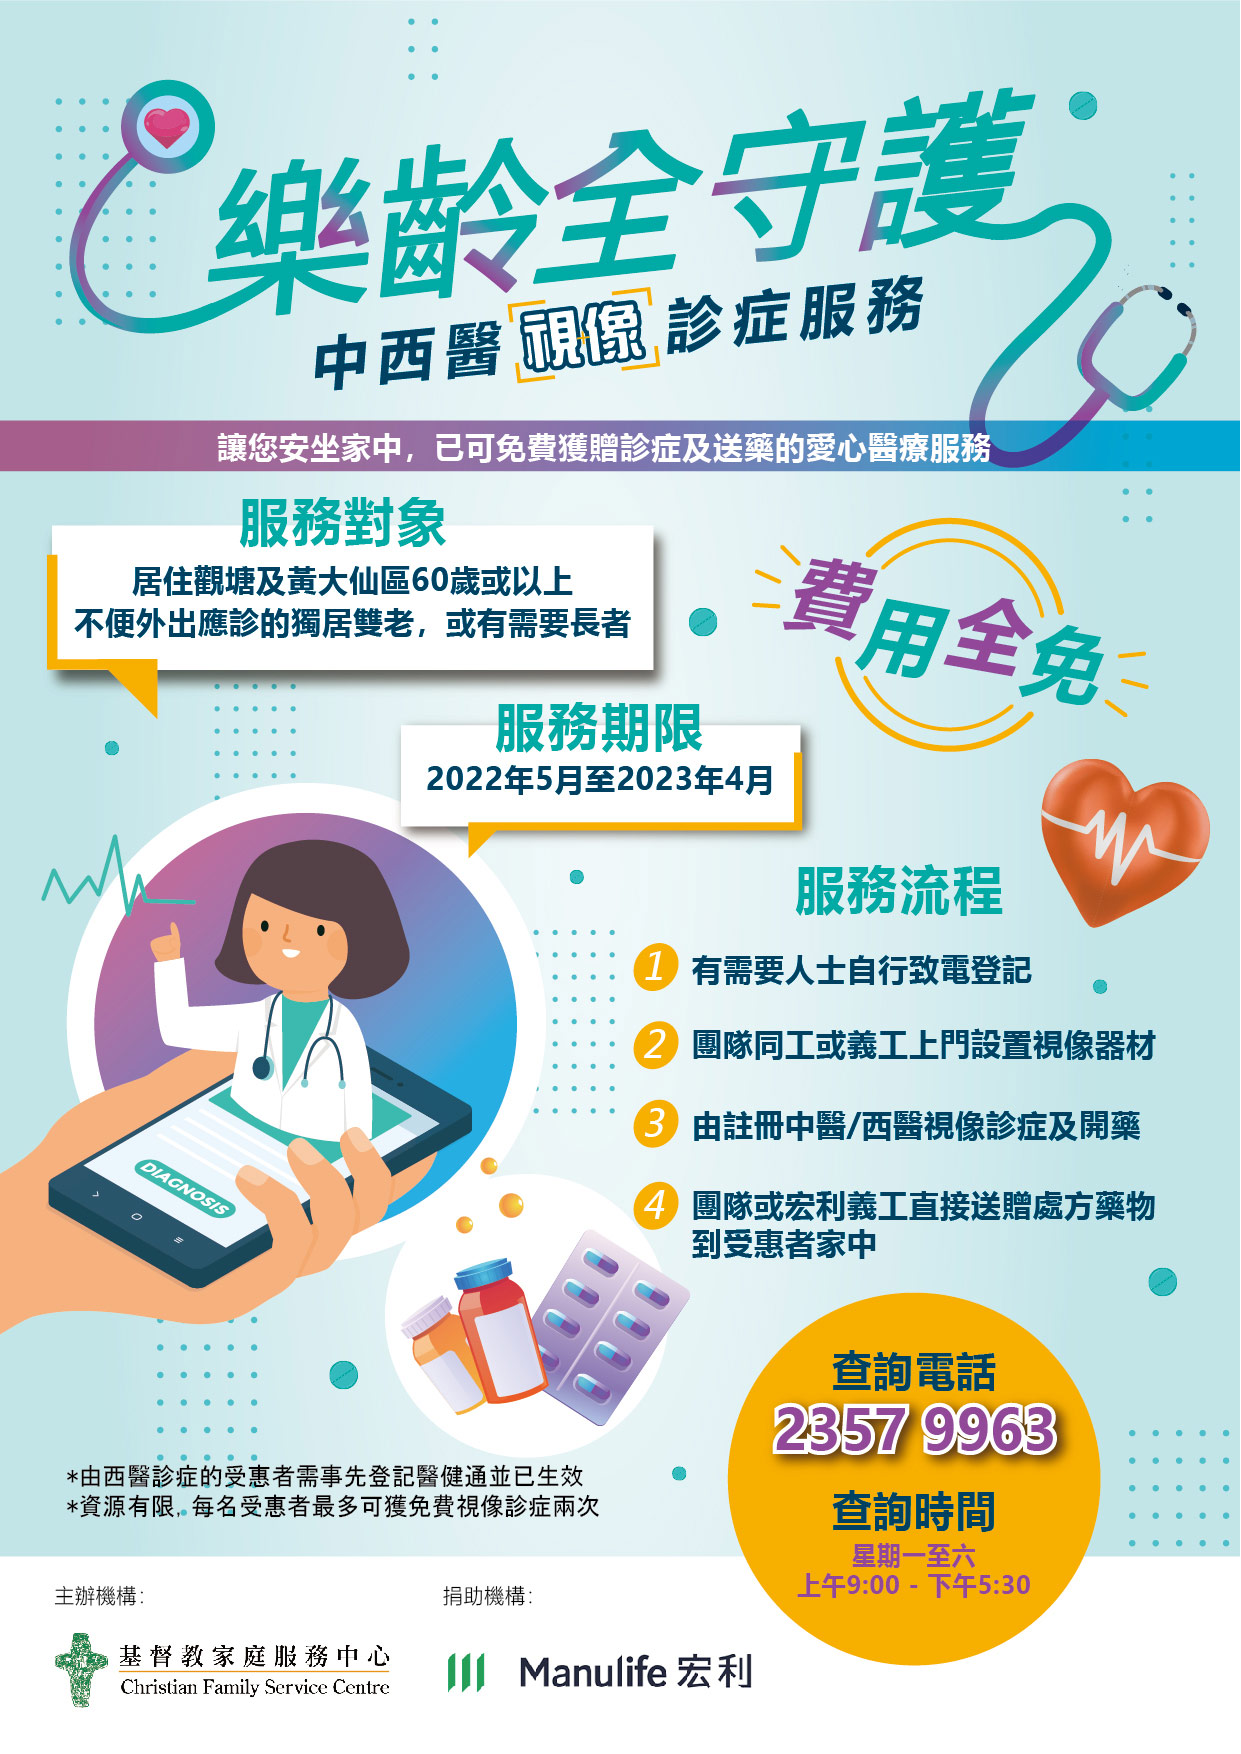 基督教家庭服務中心與宏利香港攜手推出宏利「樂齡全守護」中西醫視像診症服務